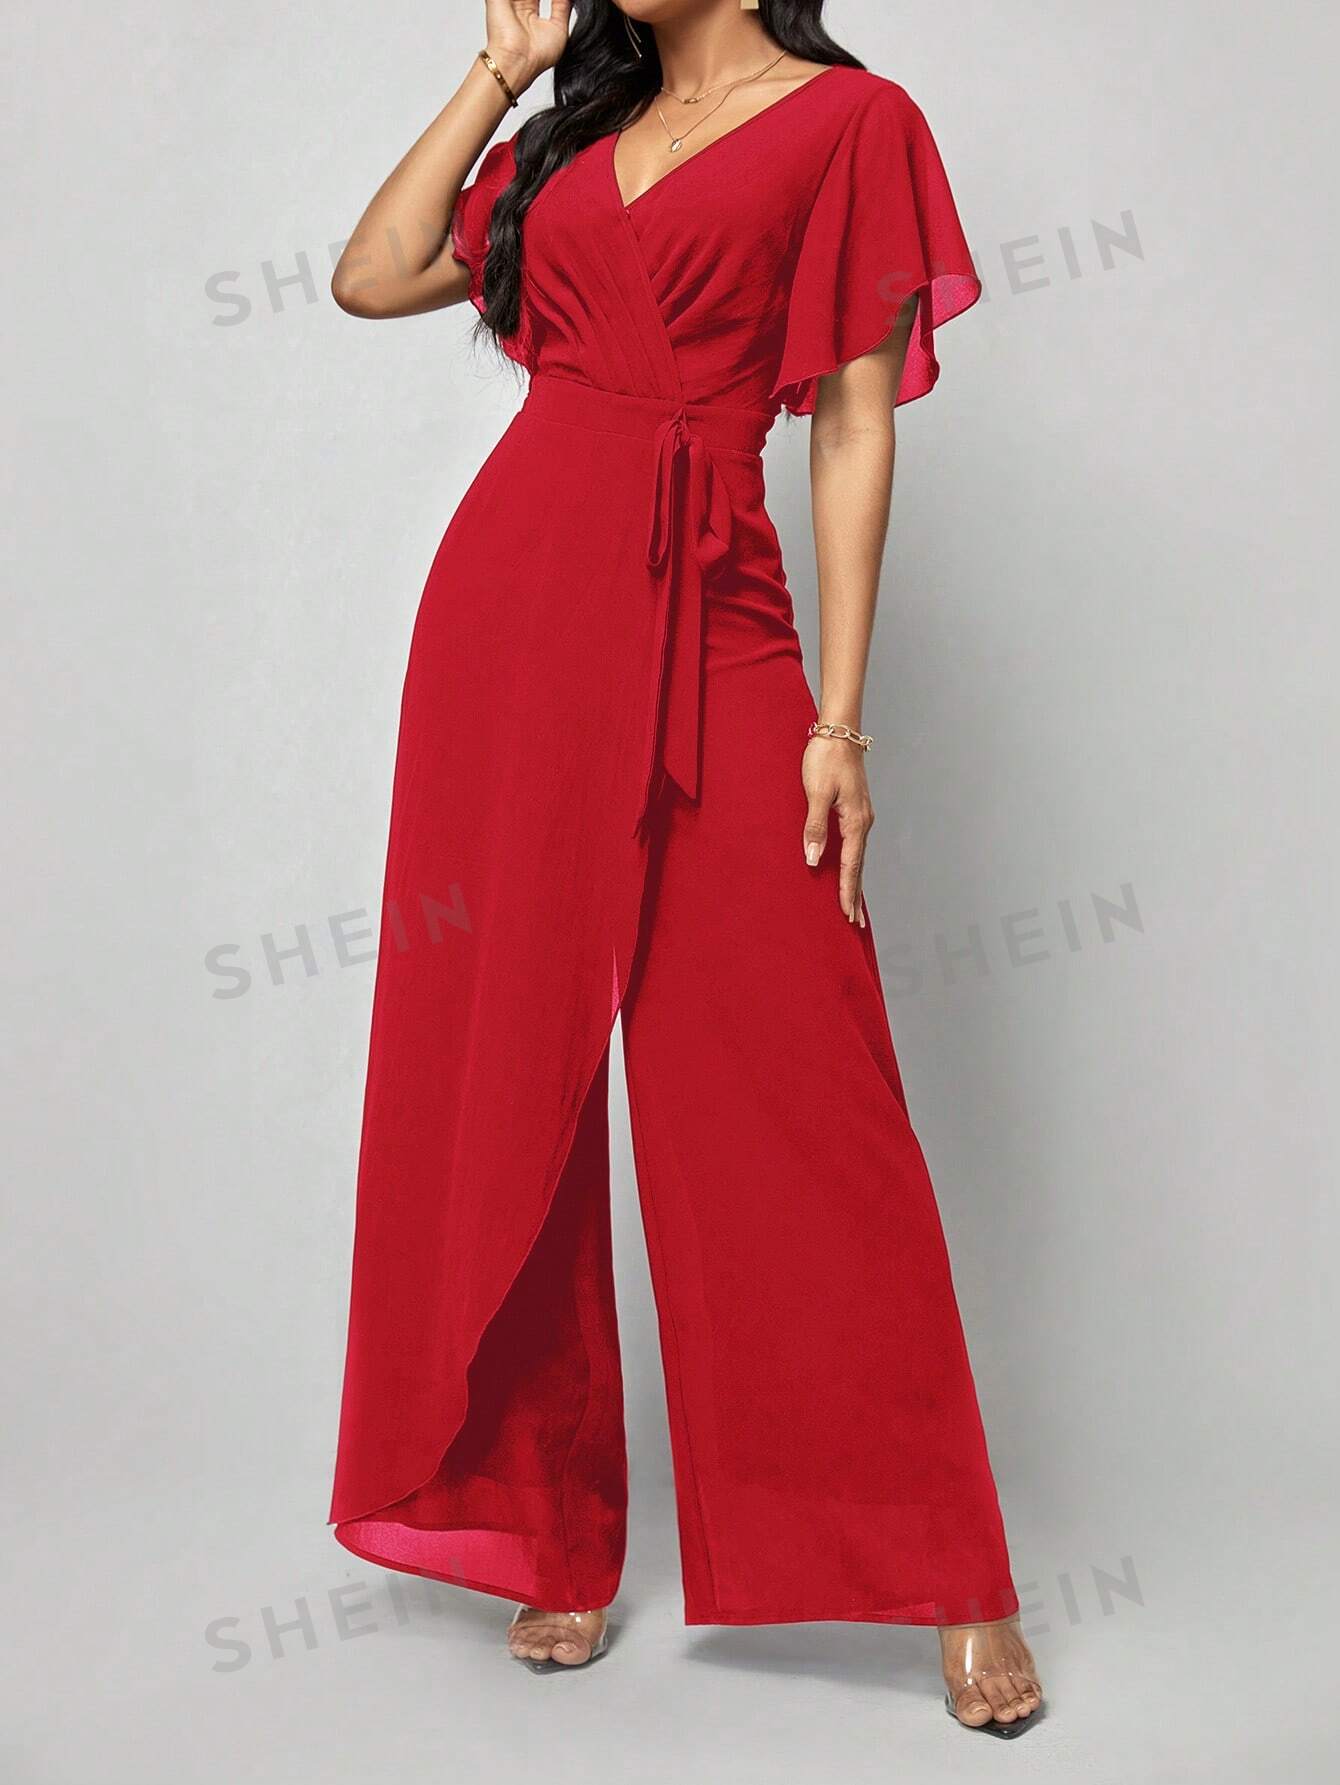 shein ezwear женский комбинезон с широкими штанинами и изогнутым вырезом черный SHEIN Clasi Женский однотонный плиссированный комбинезон с запахом и завязывающимся поясом, красный